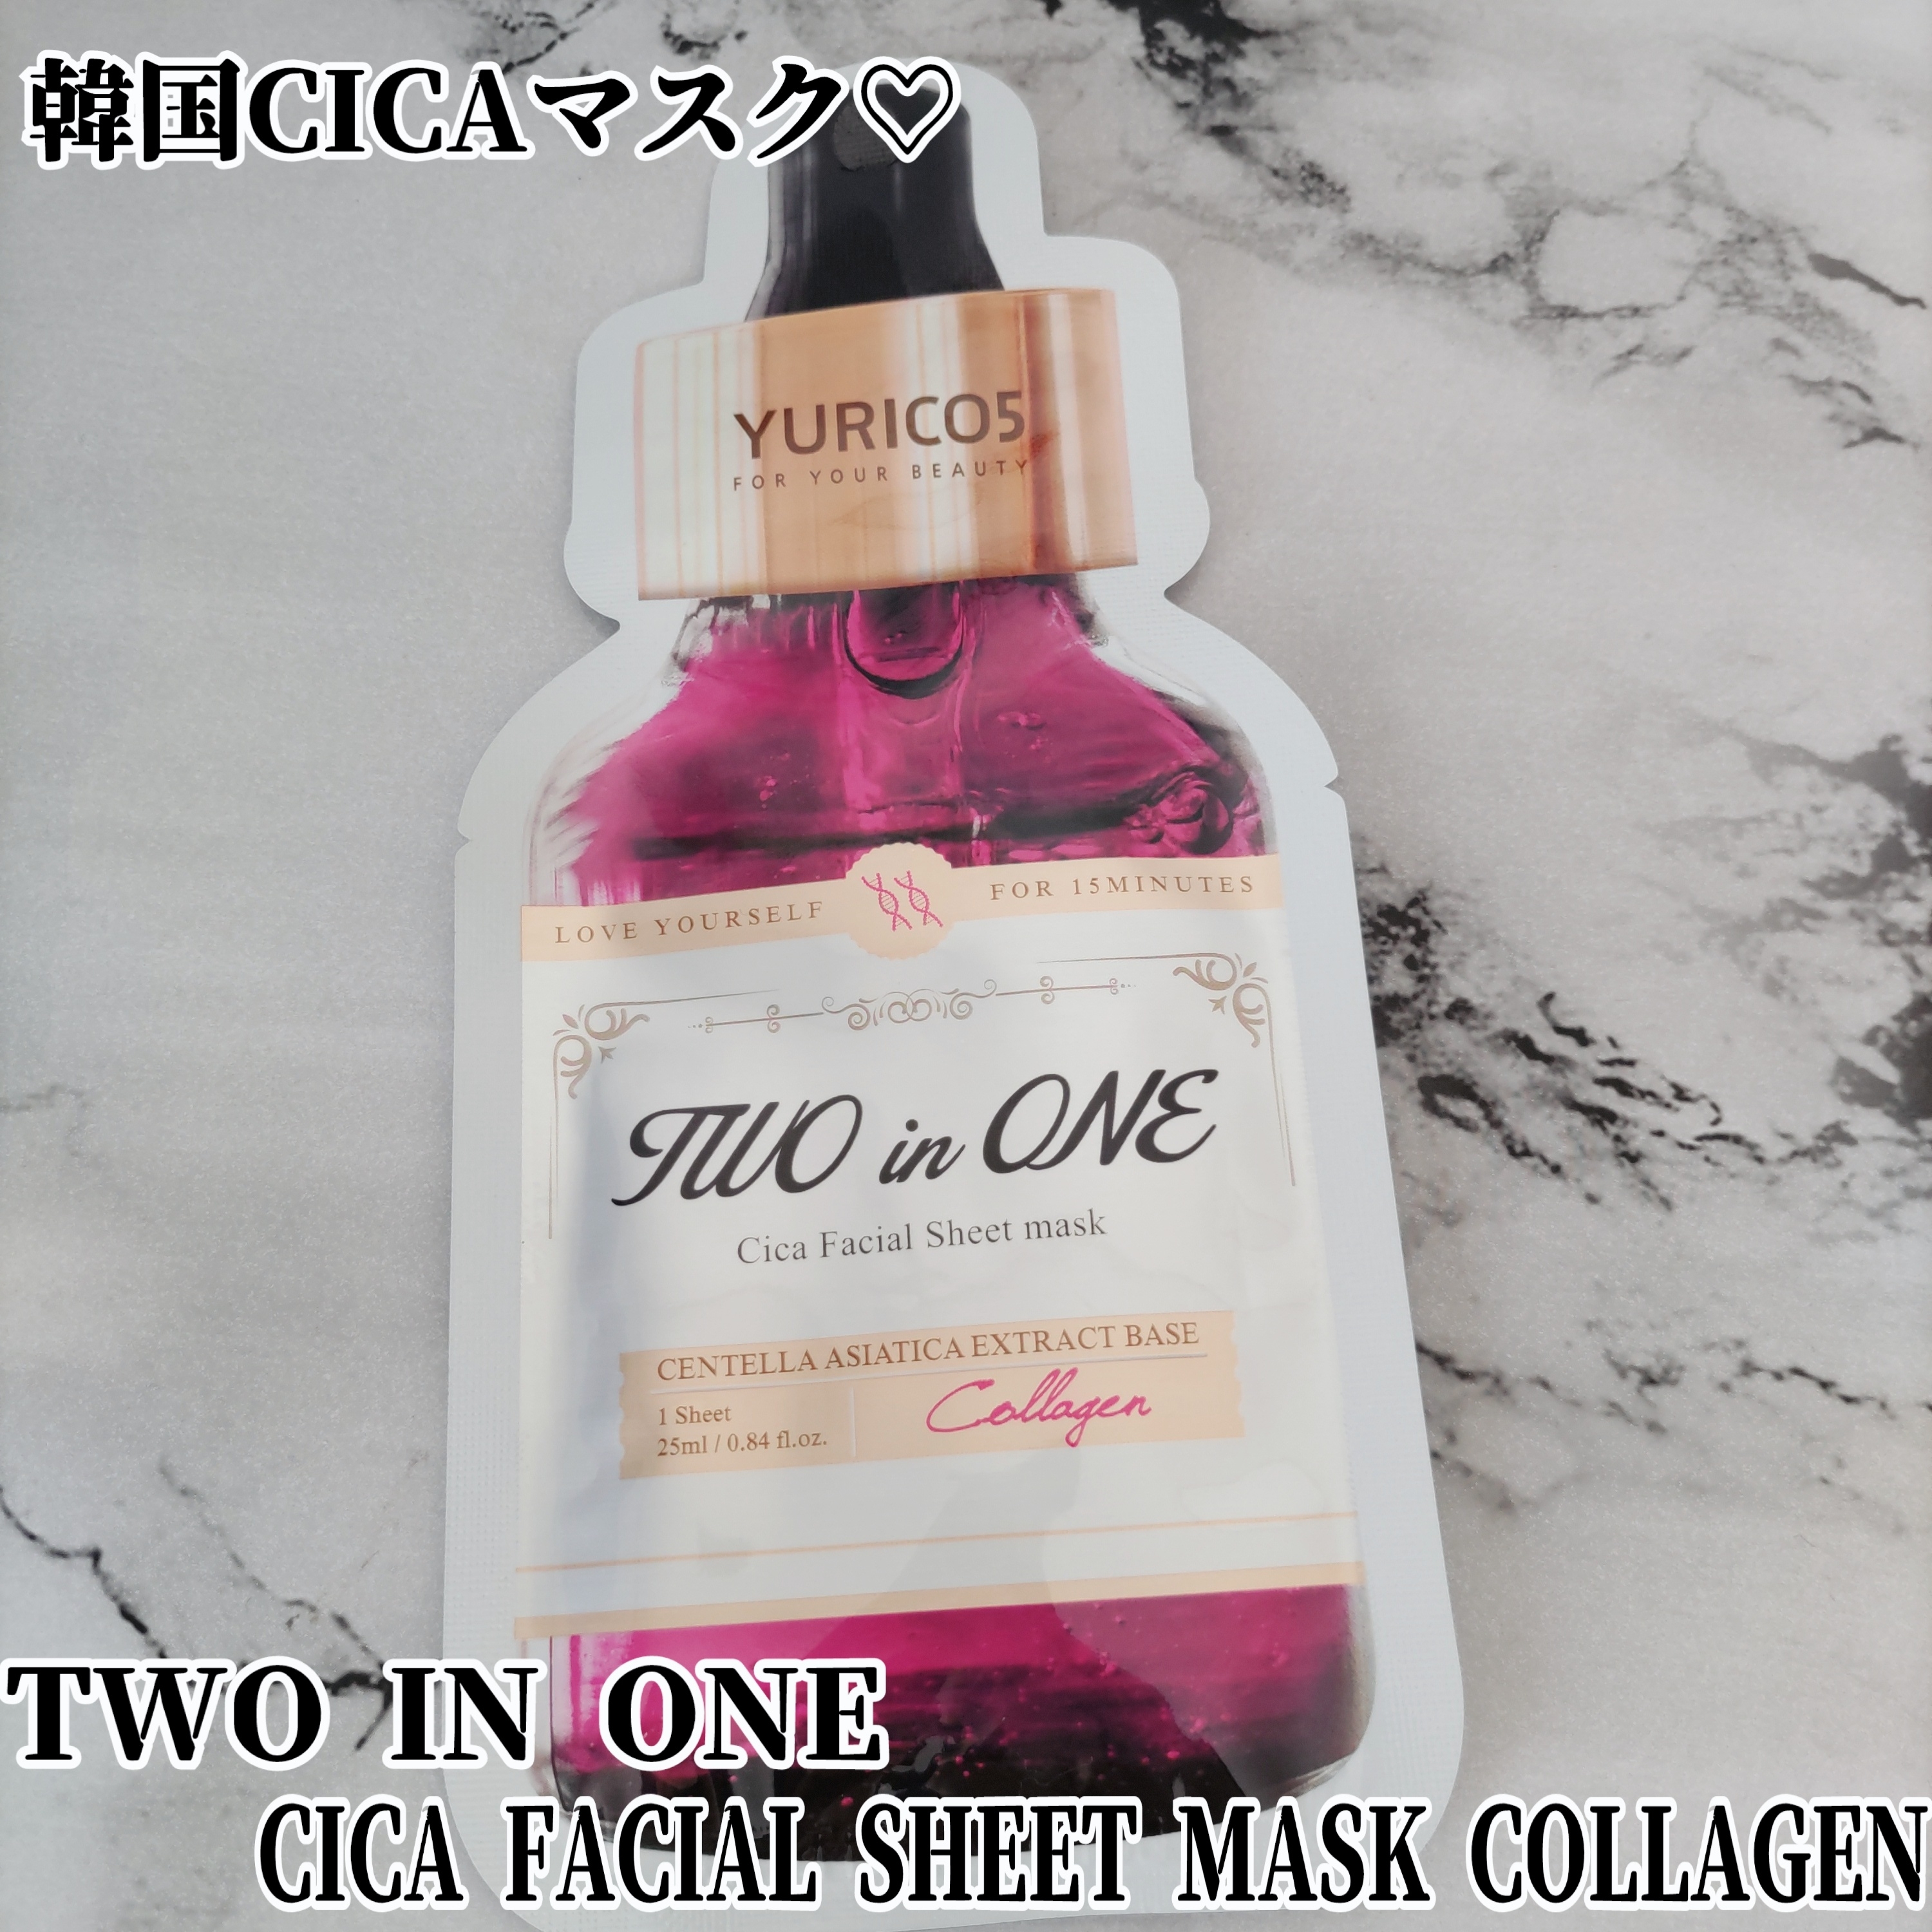 YURICO5 2 in 1 CICA フェイスマスク コラーゲンを使ったYuKaRi♡さんのクチコミ画像1